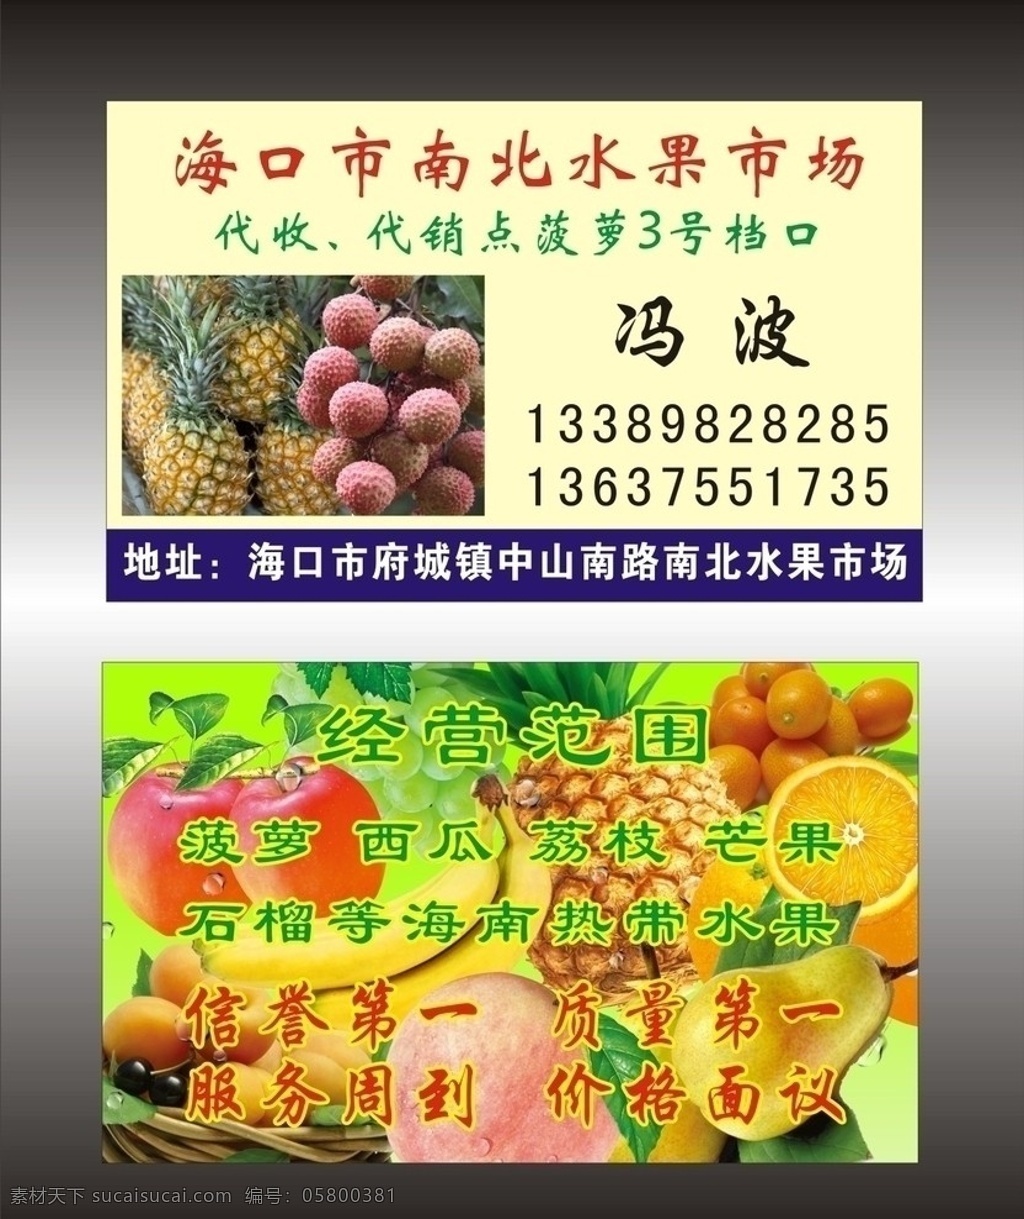 水果名片 水果 菠萝 荔枝 苹果 水果市场 南北